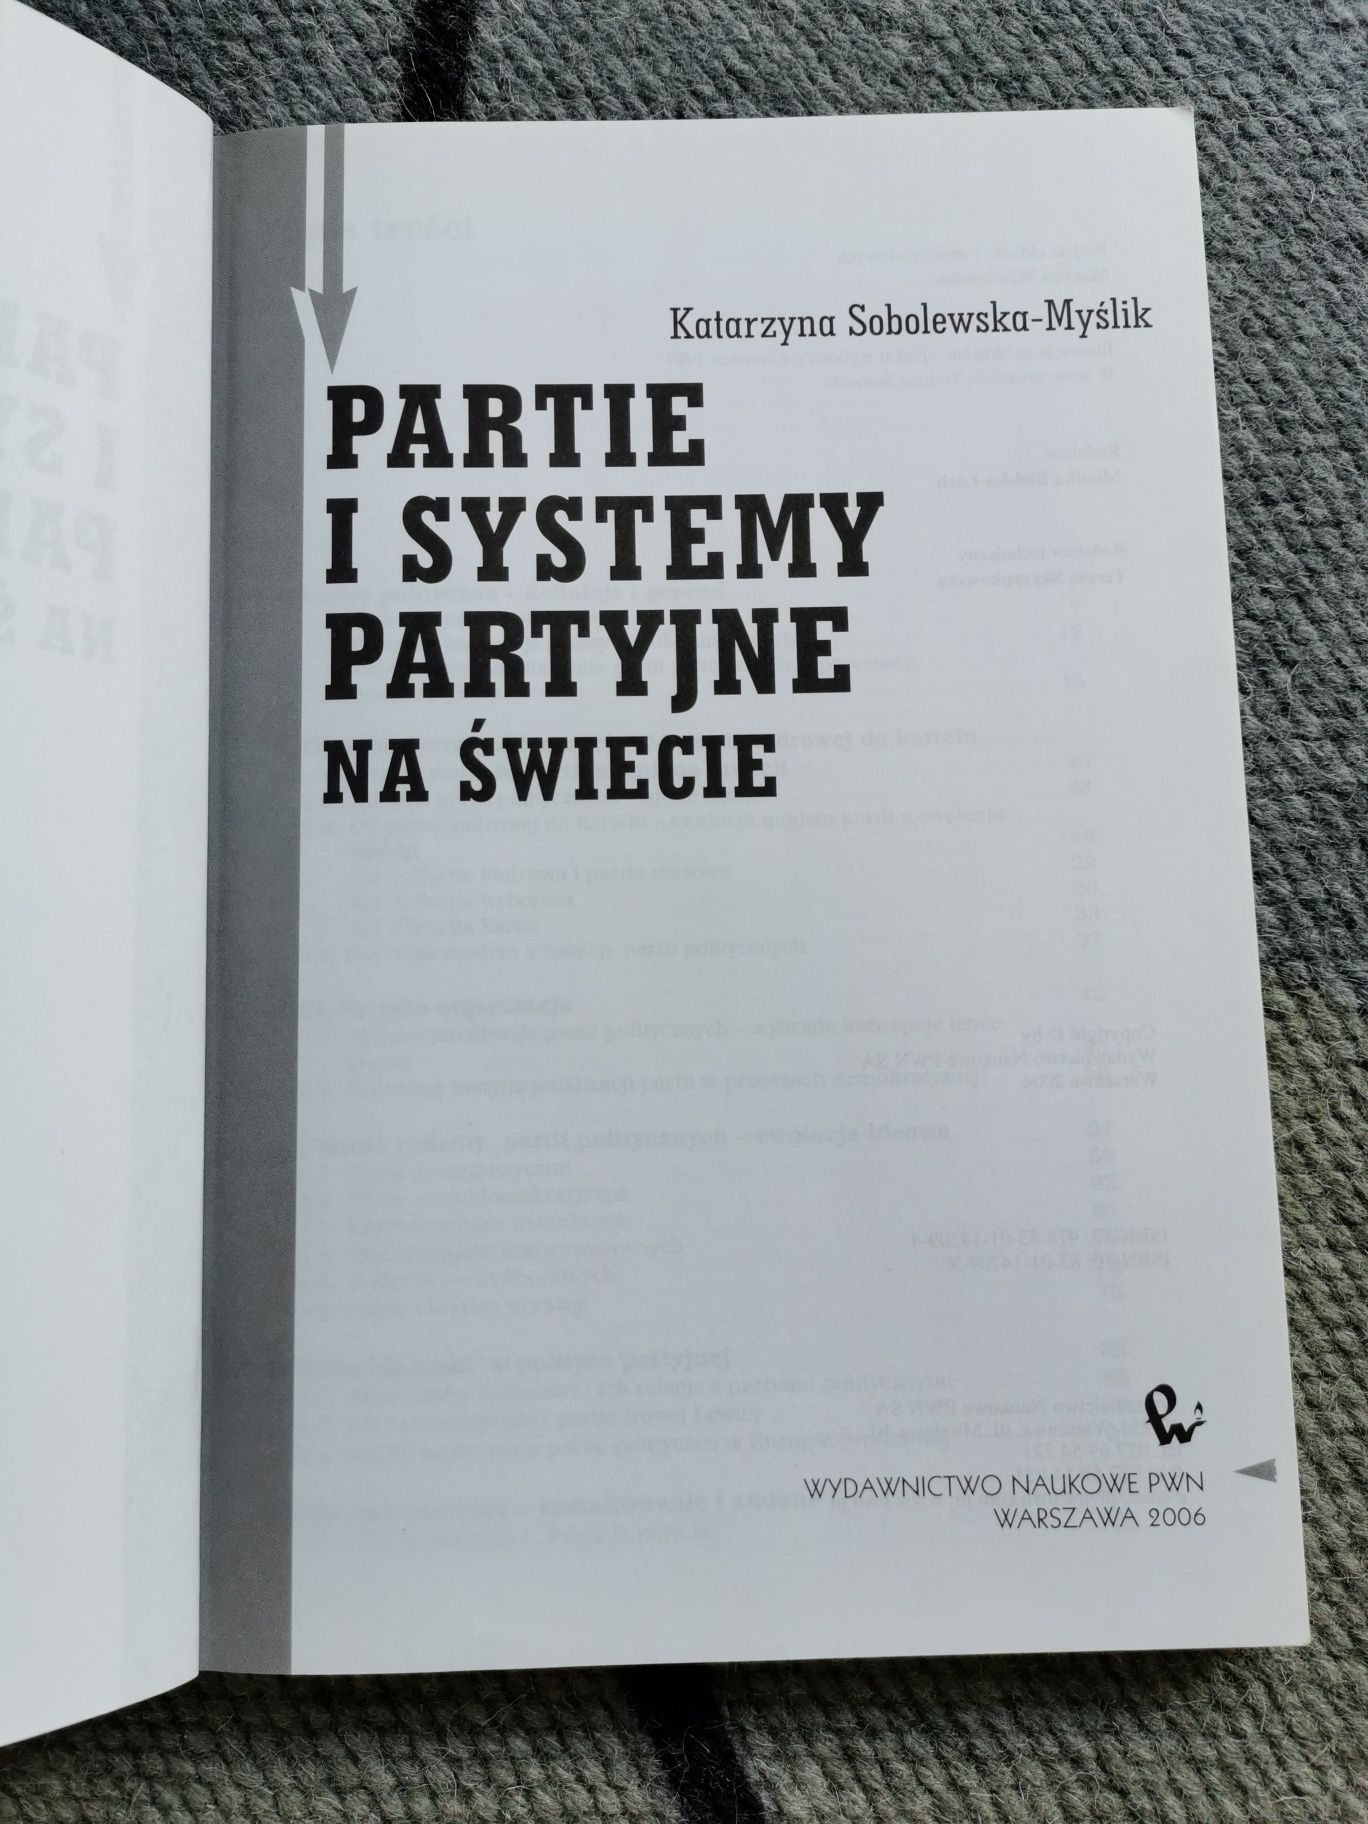 Partie i systemy partyjne - Katarzyna Sobolewska-Myślik